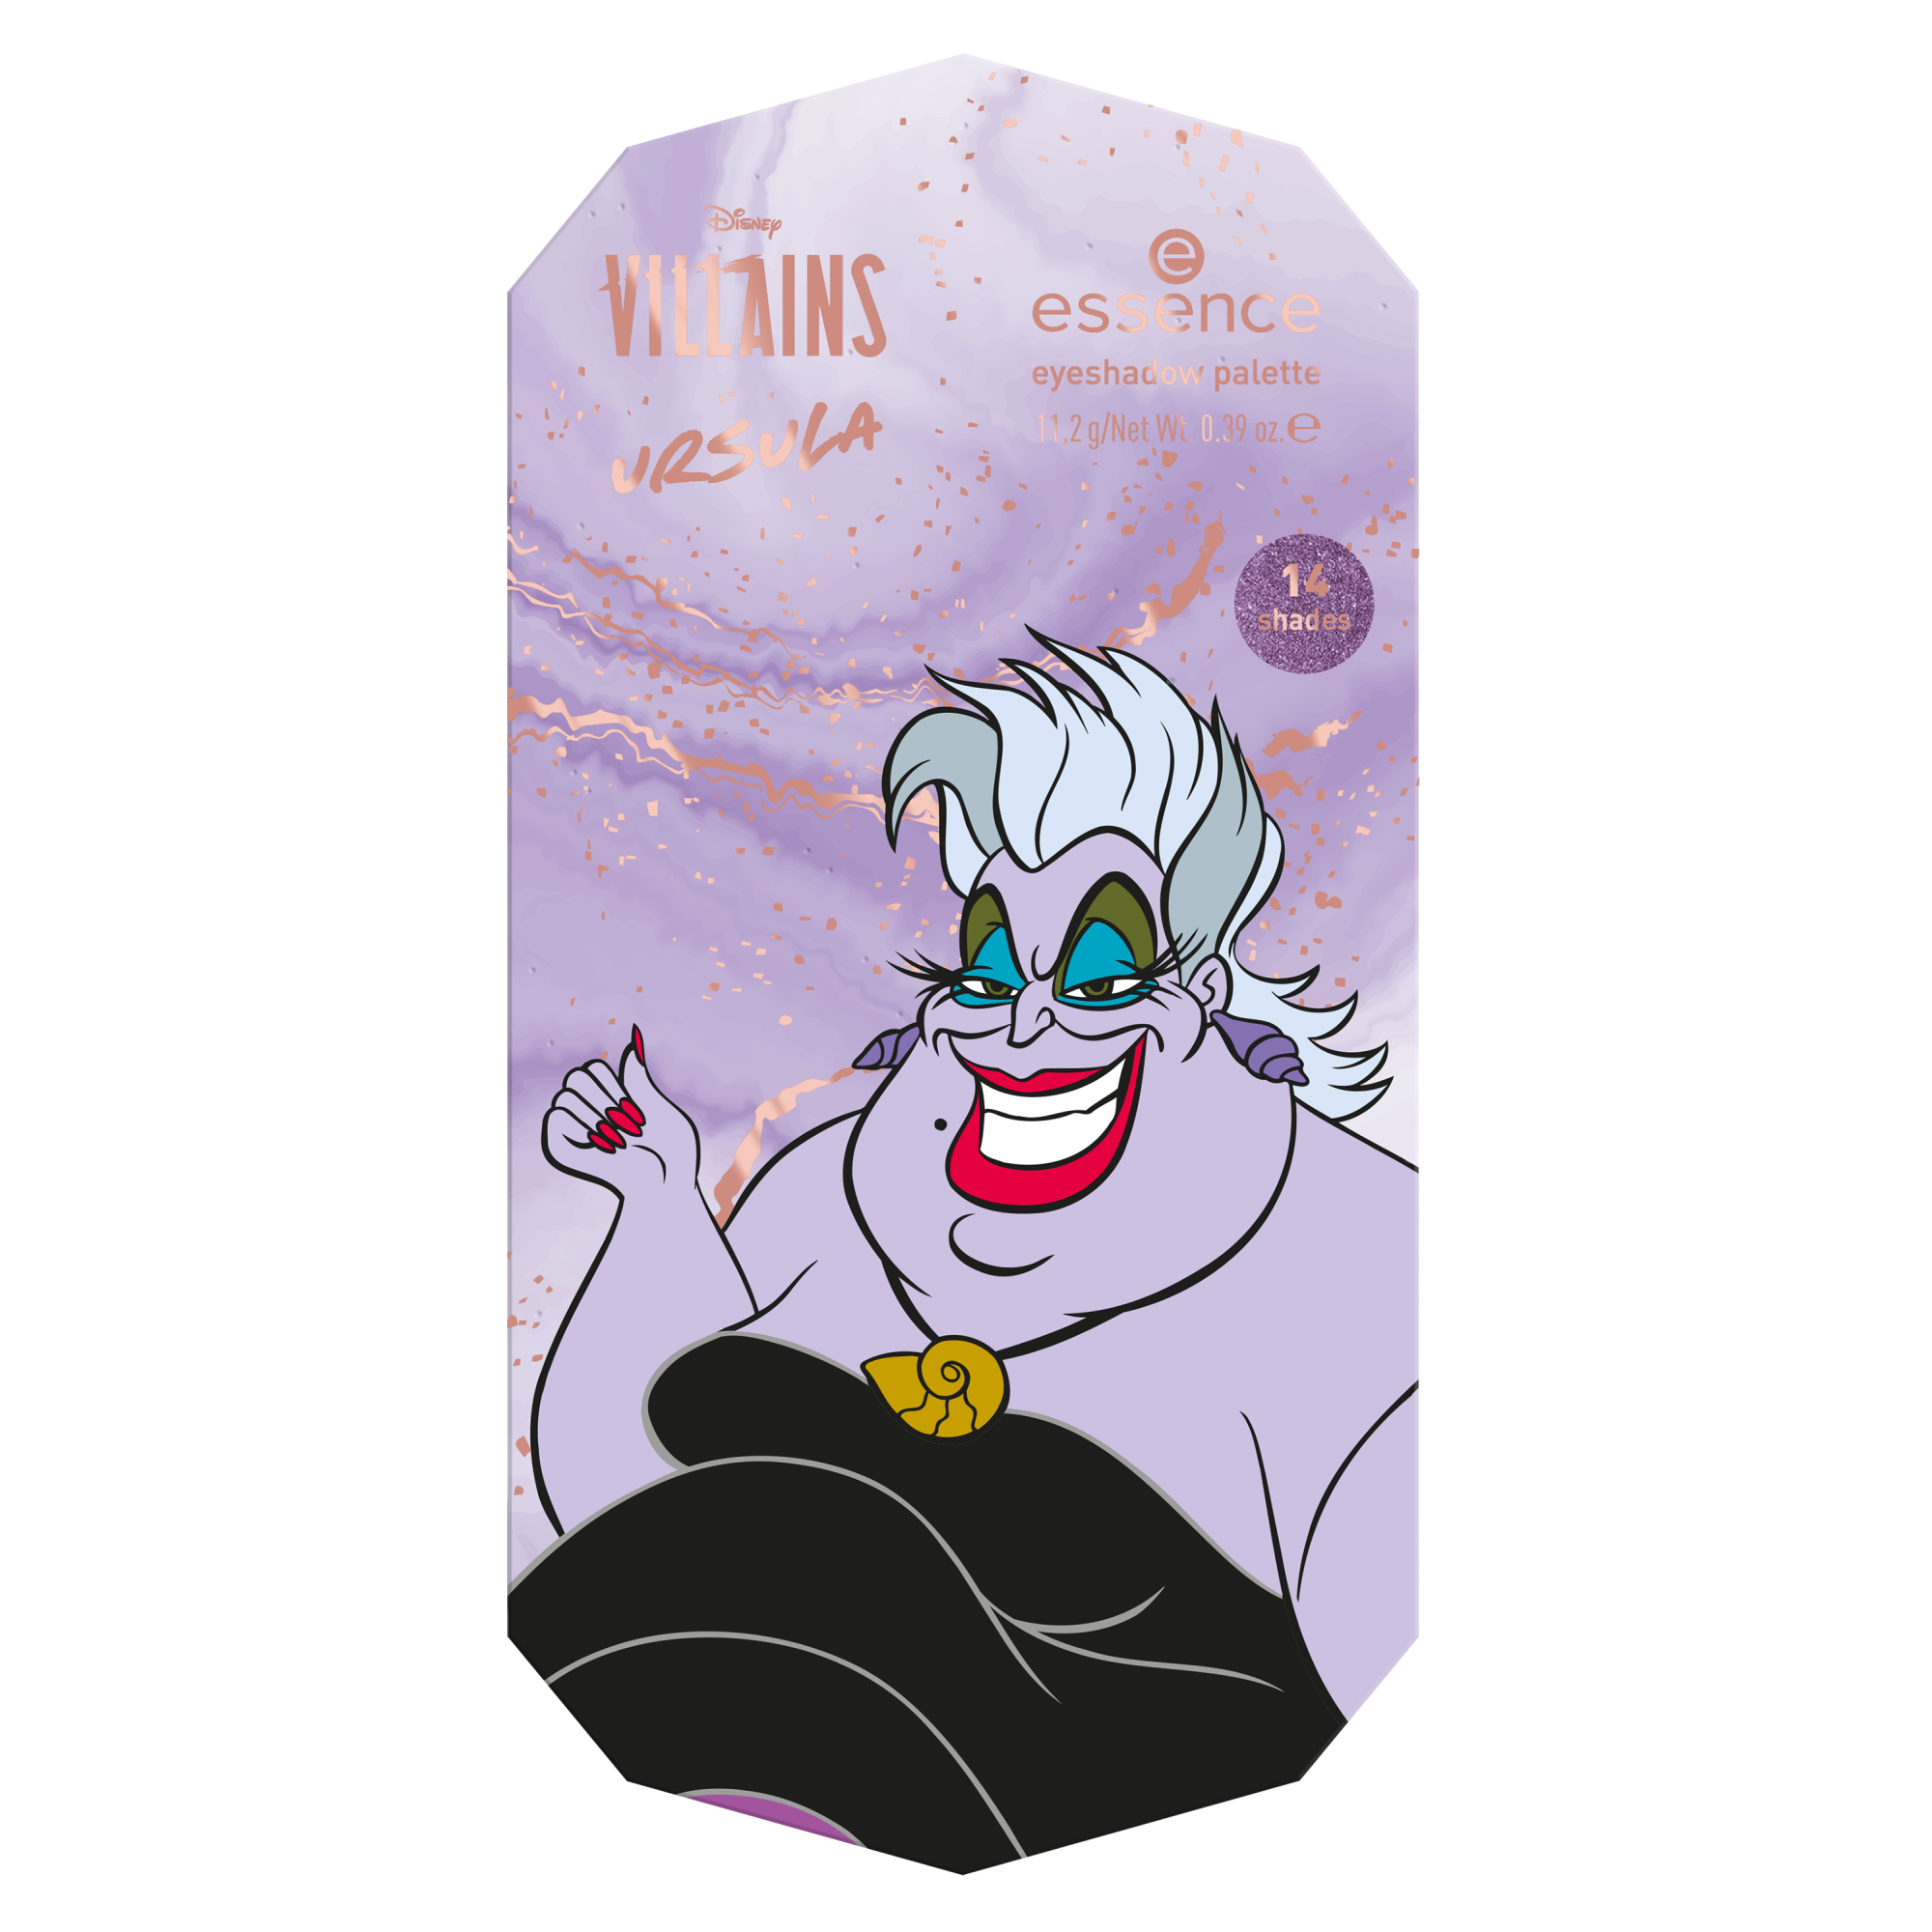 Disney Villains Ursula eyeshadow palette